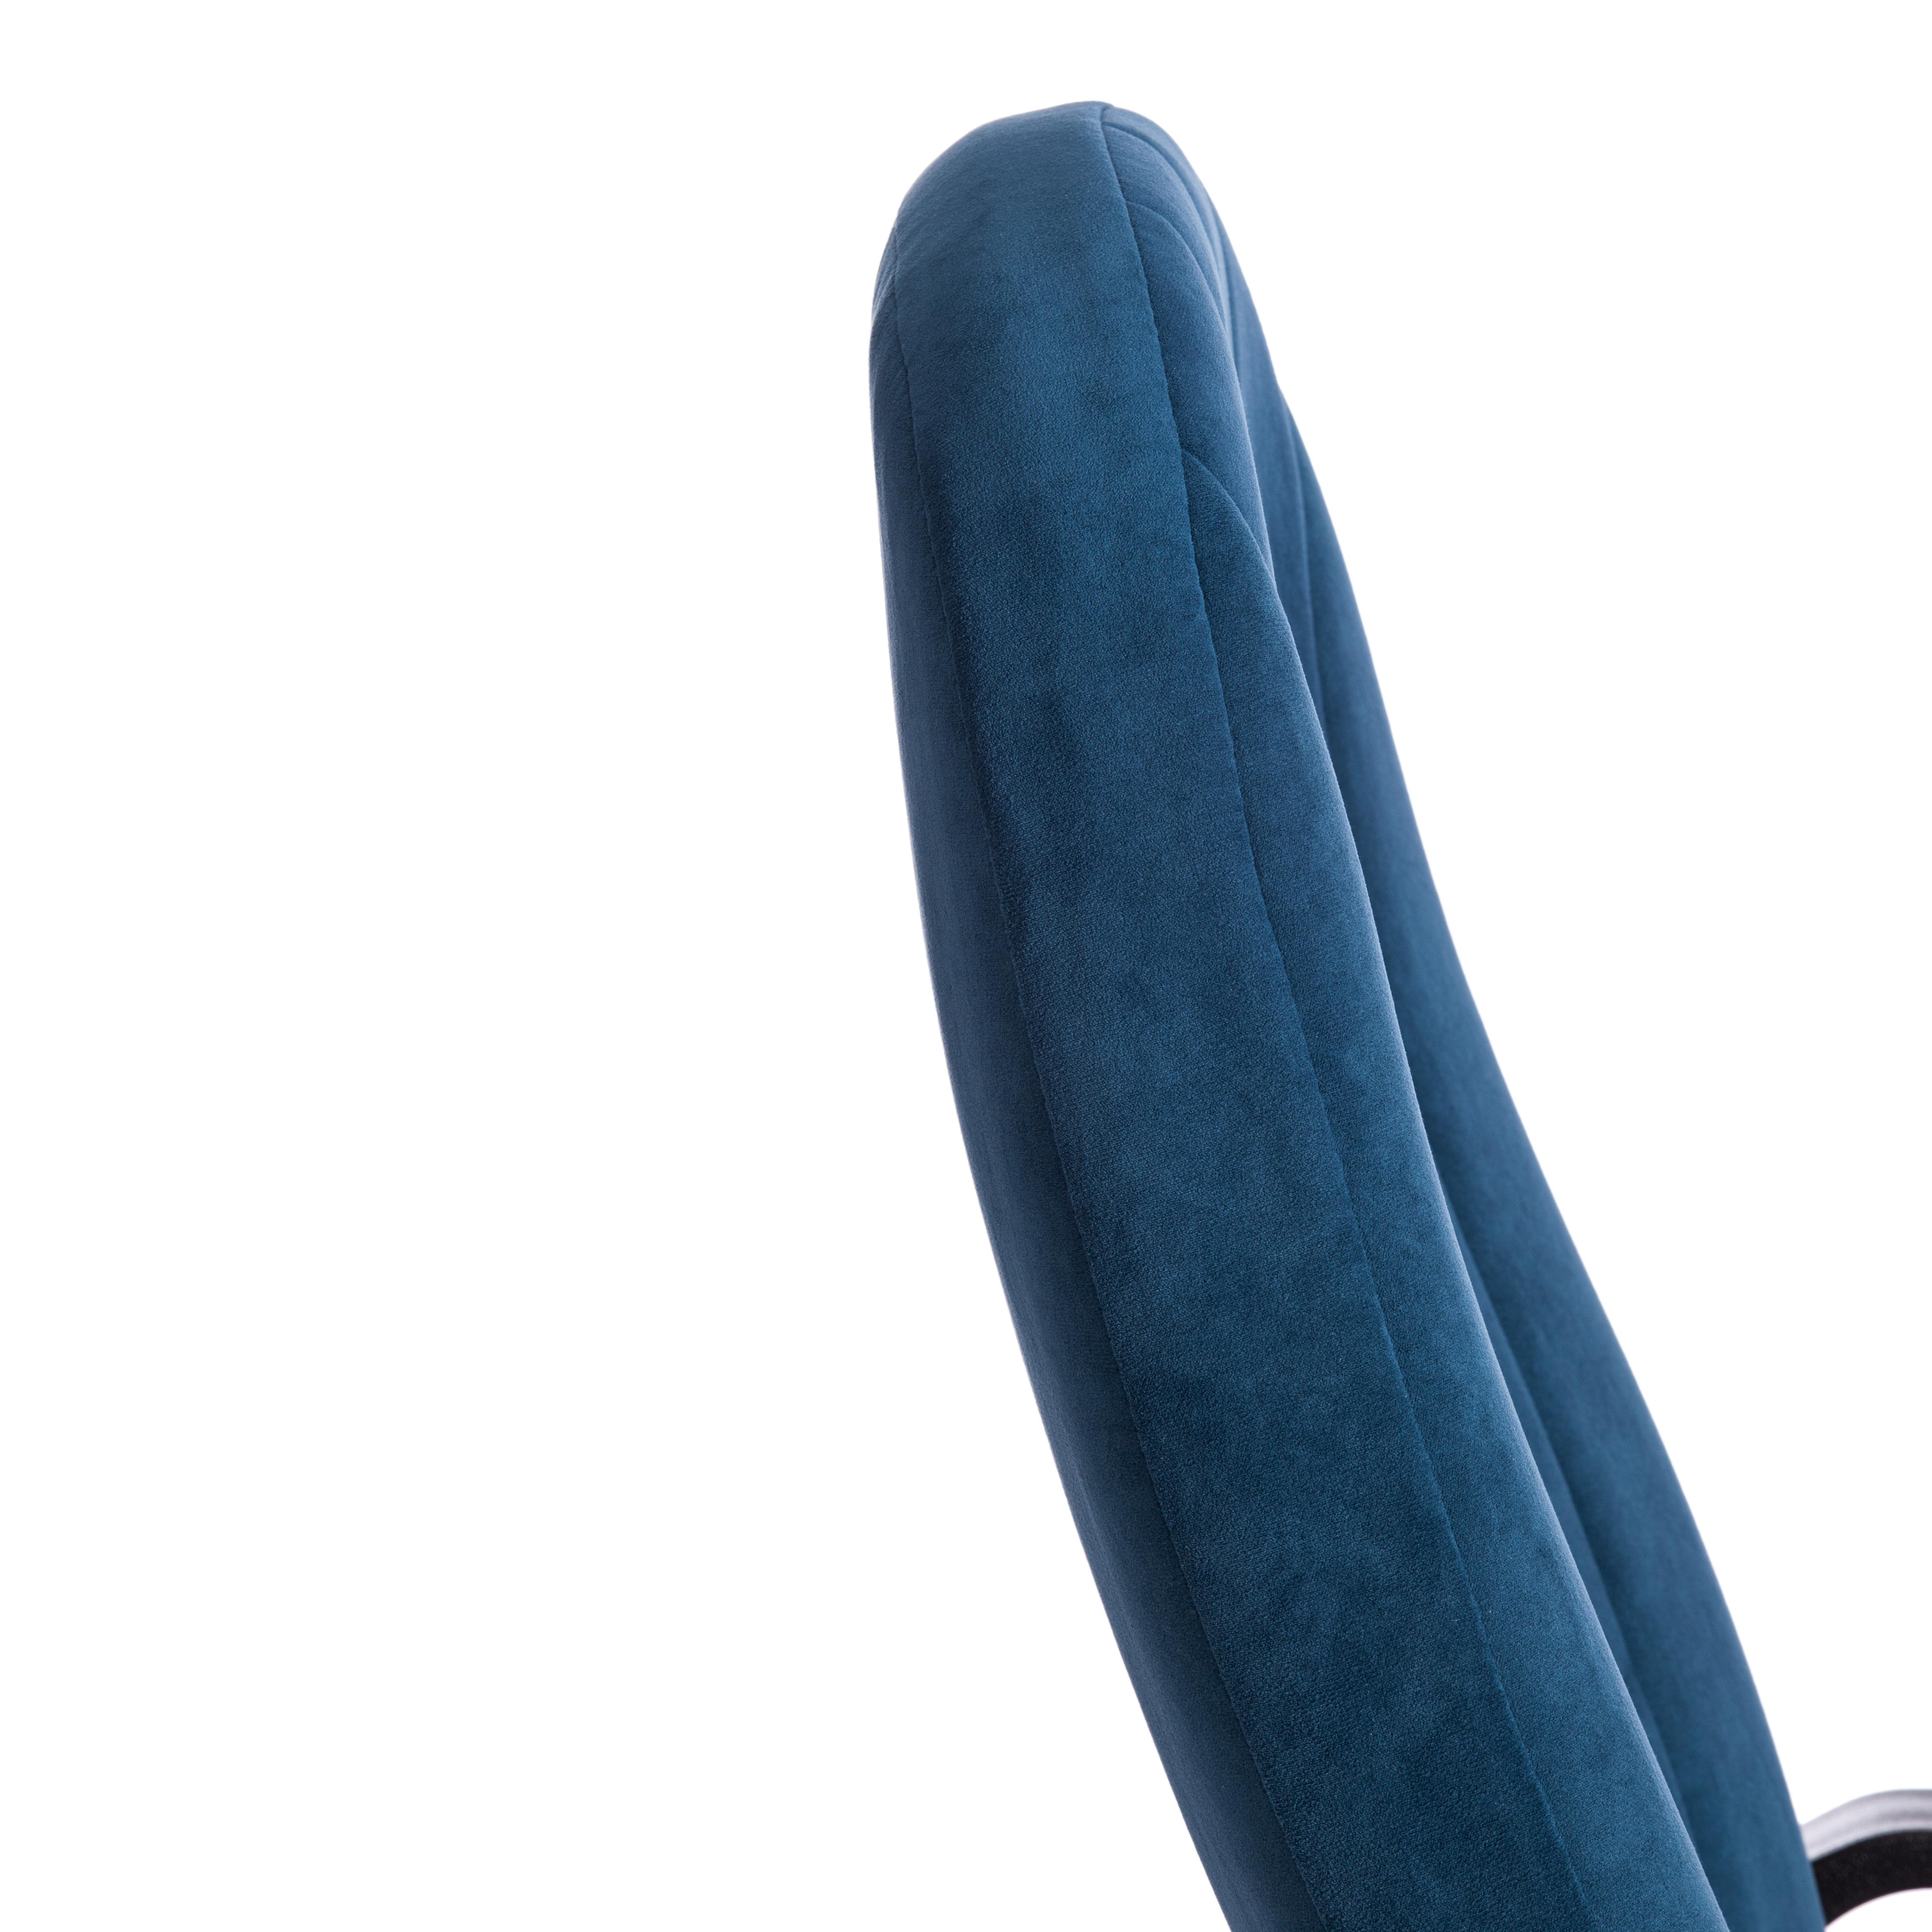 Кресло СН888 LT (22) флок , синий, 32